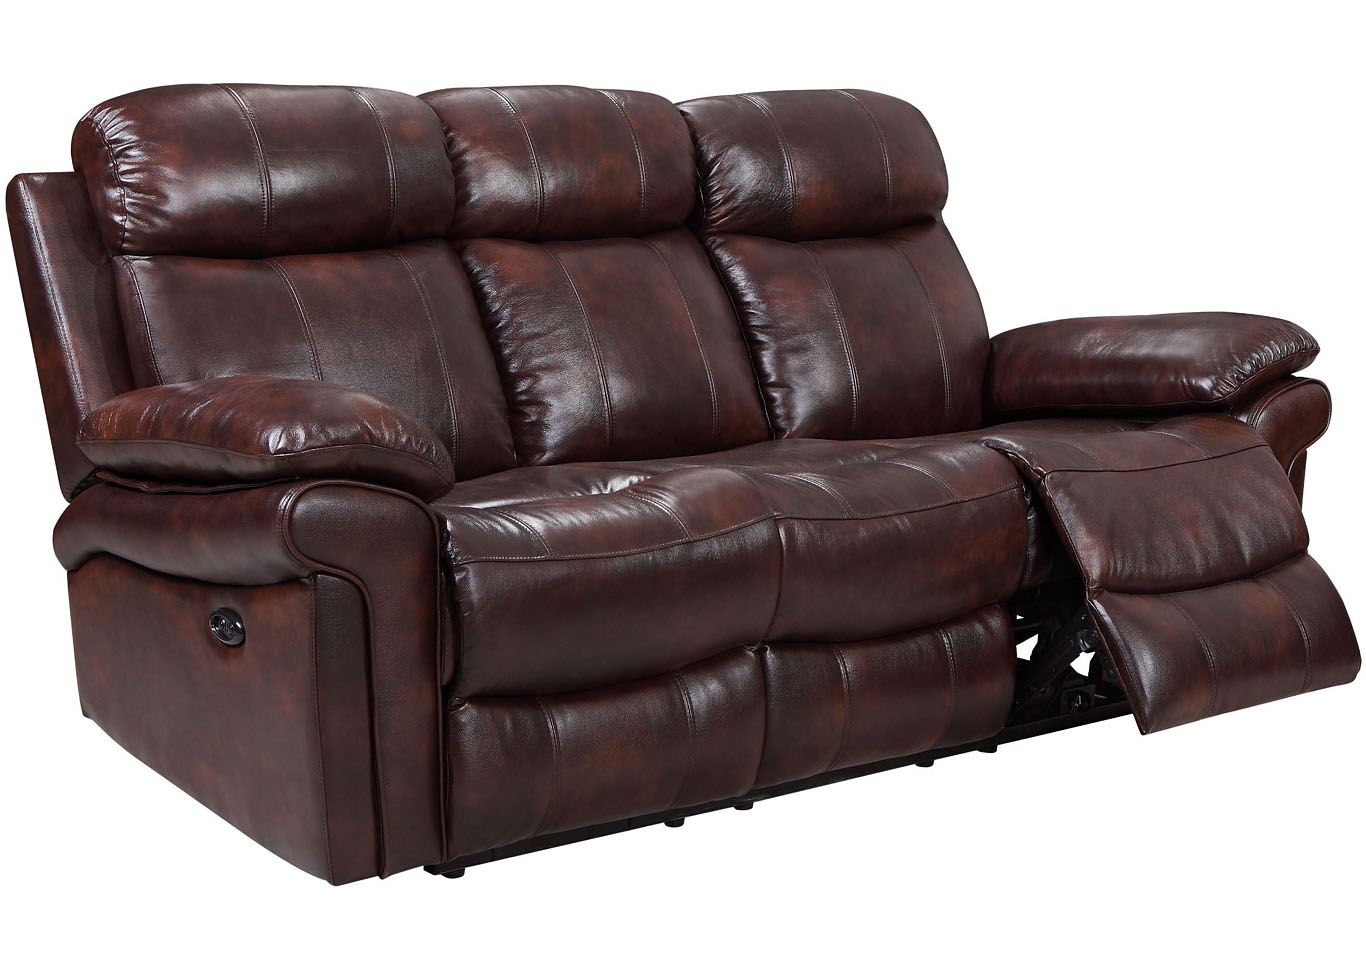 Joplin Top Grain Leather Power Dual Reclining Sofa and Power Dual Reclining Love Seat,Instore